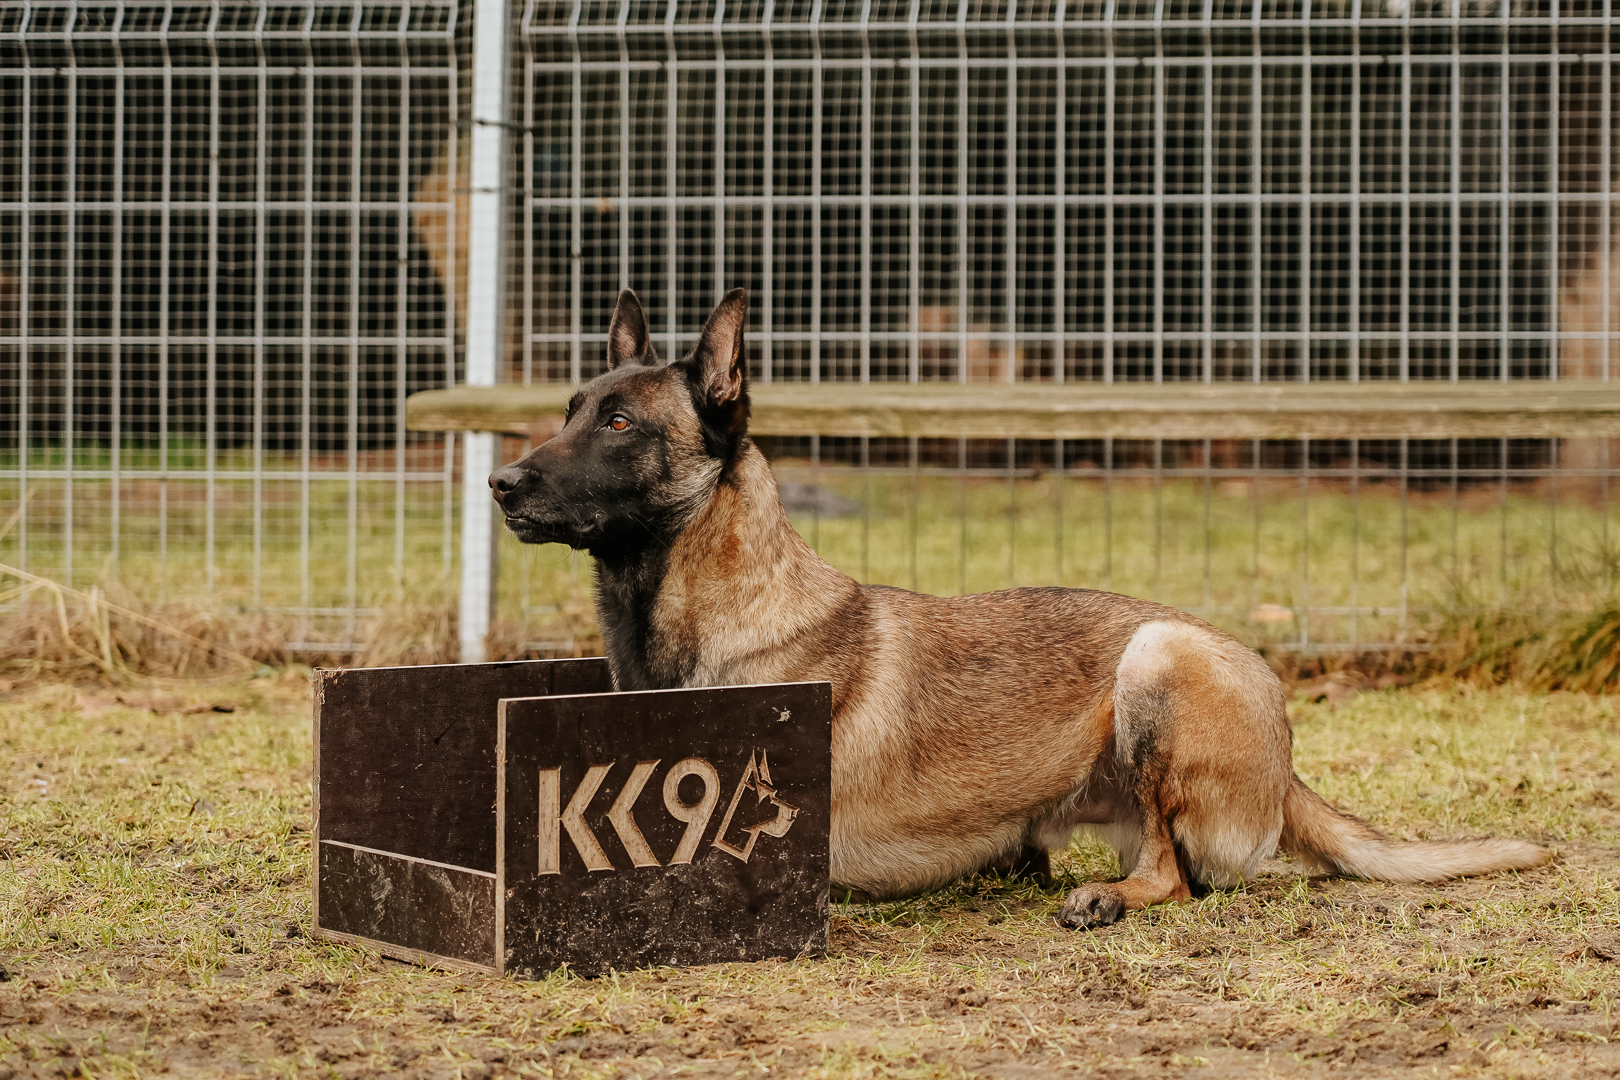 Szkolenie psa służbowego K9 wymaga specjalisty lub planu treningu z psem